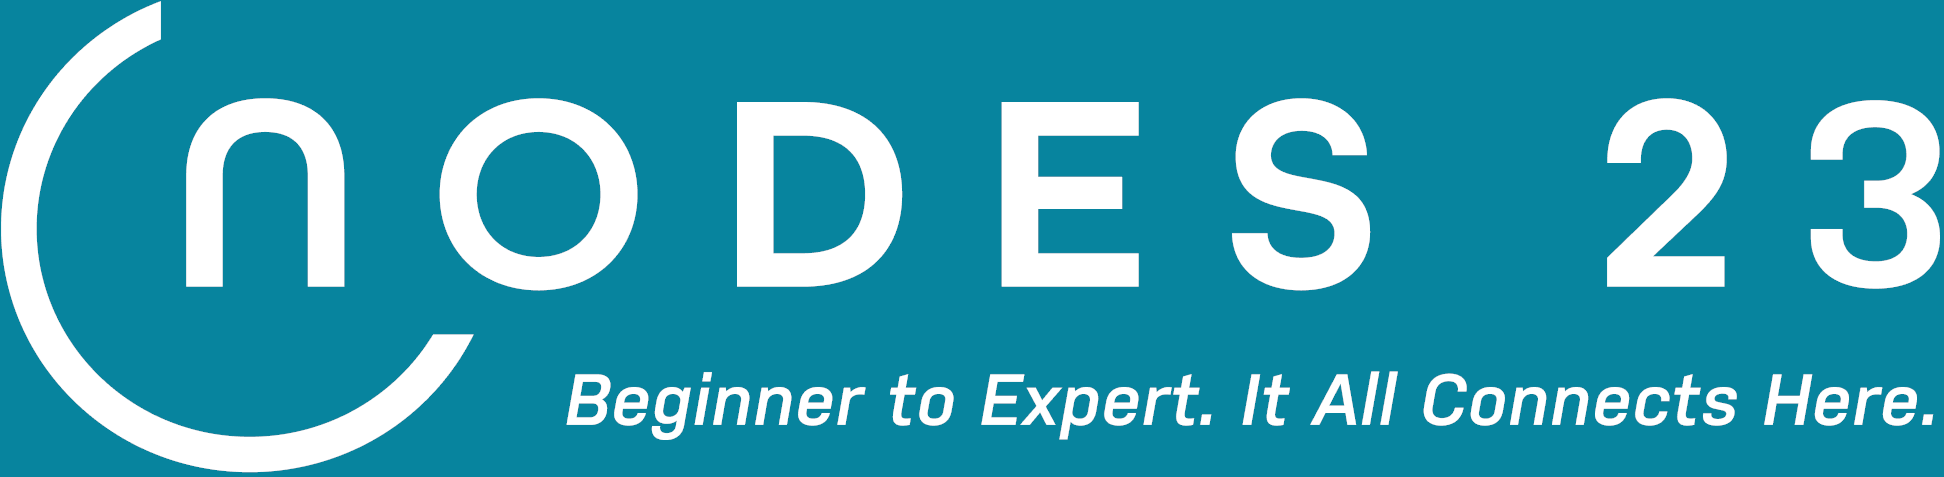 NODES Conference Logo